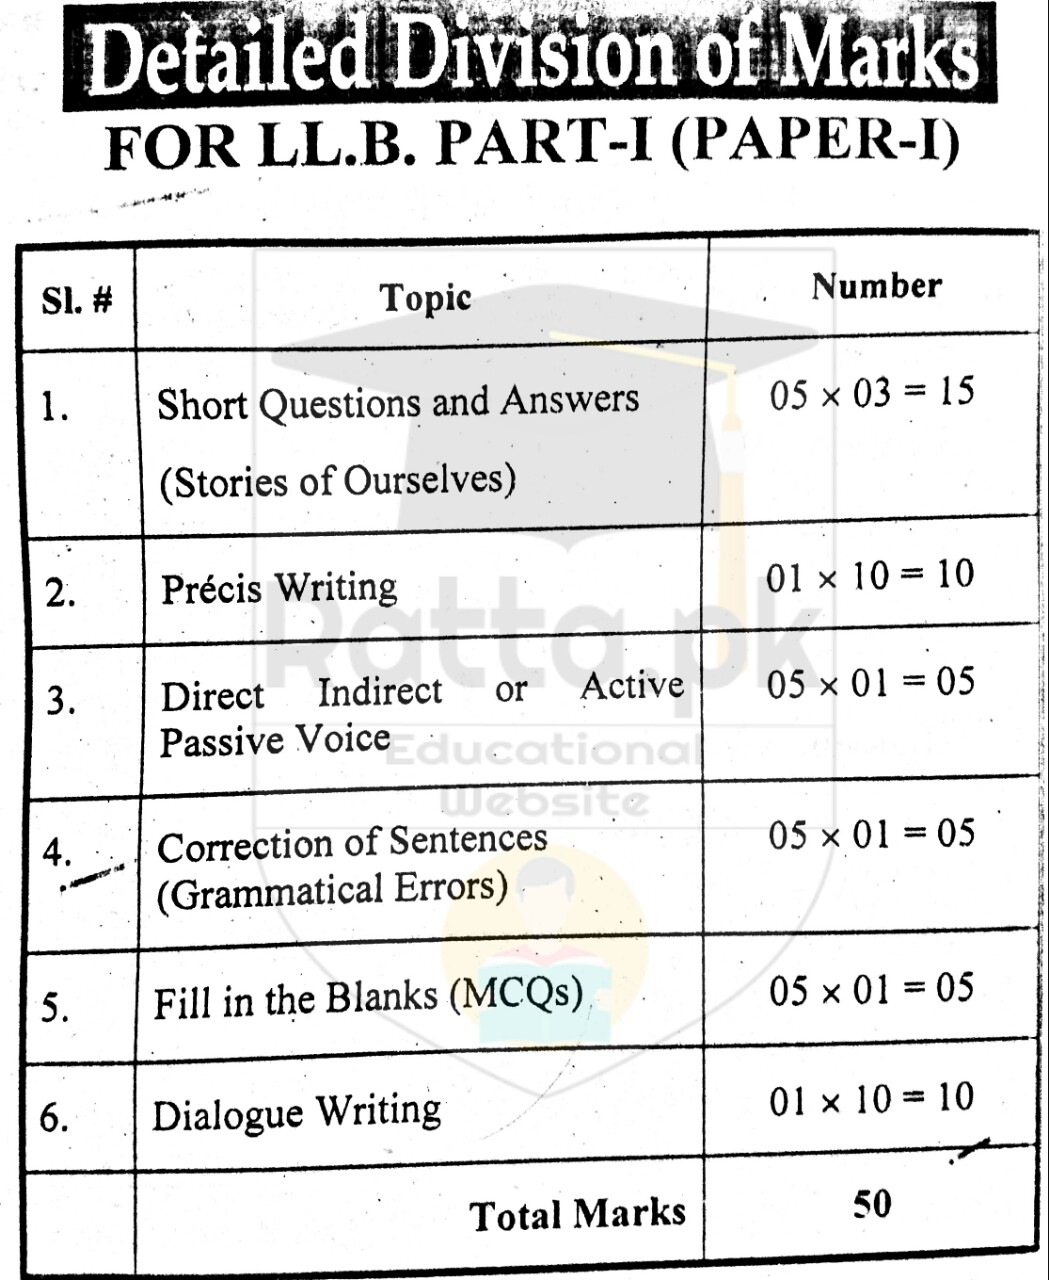 LLB Part 1 English Paper Pattern Punjab University